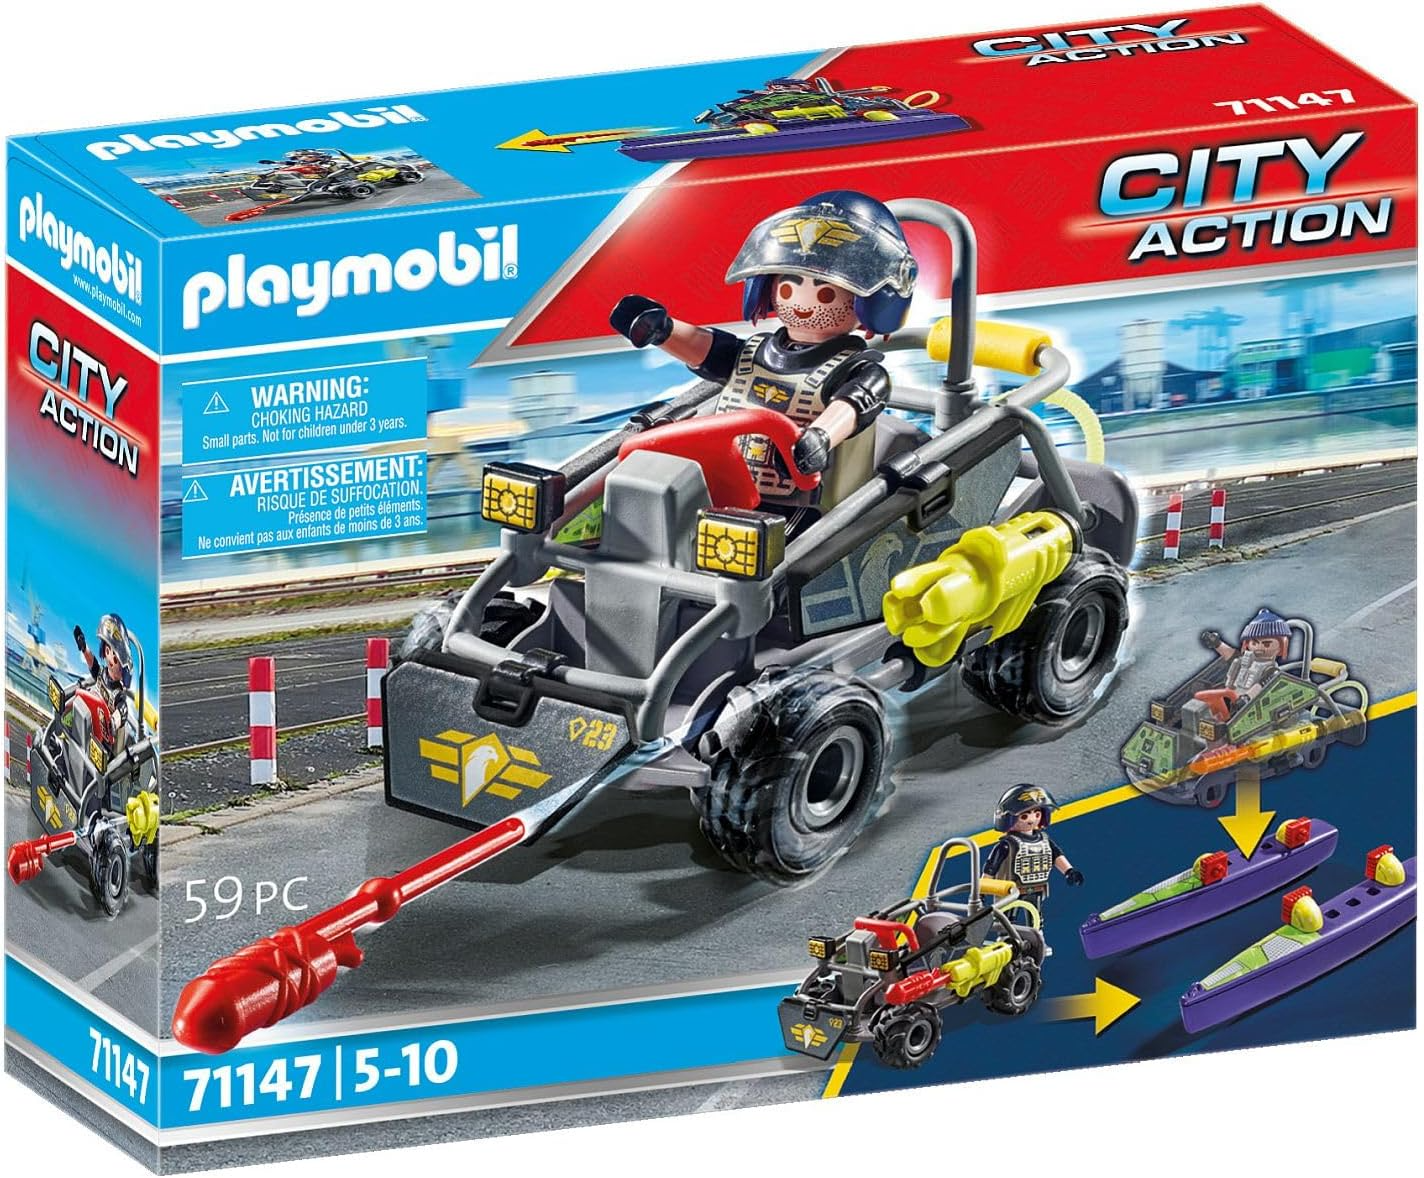 Playmobil 71147 City Action Tactical Multi-Terrain Quad, lancha SWAT conversível, encenação divertida e imaginativa, conjunto de jogos adequado para crianças de 5 anos ou mais